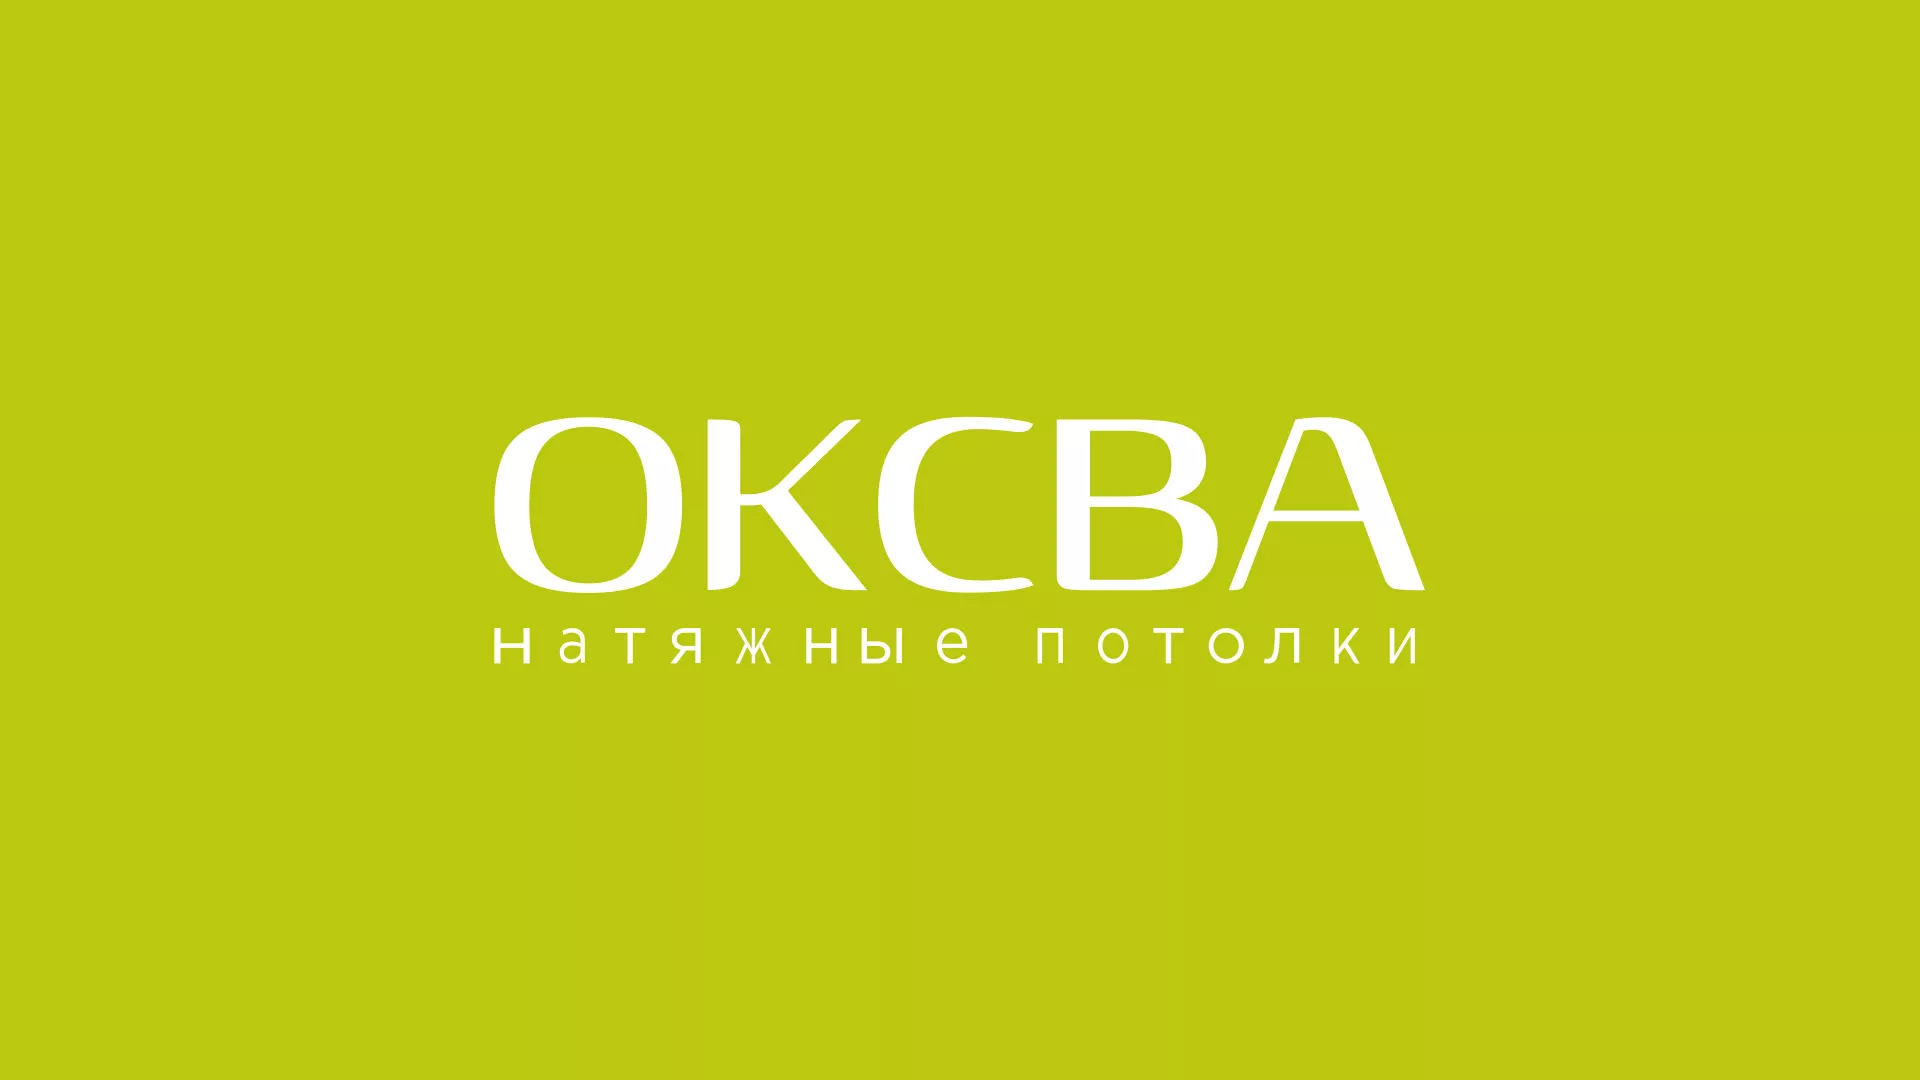 Создание сайта по продаже натяжных потолков для компании «ОКСВА» в Хабаровске